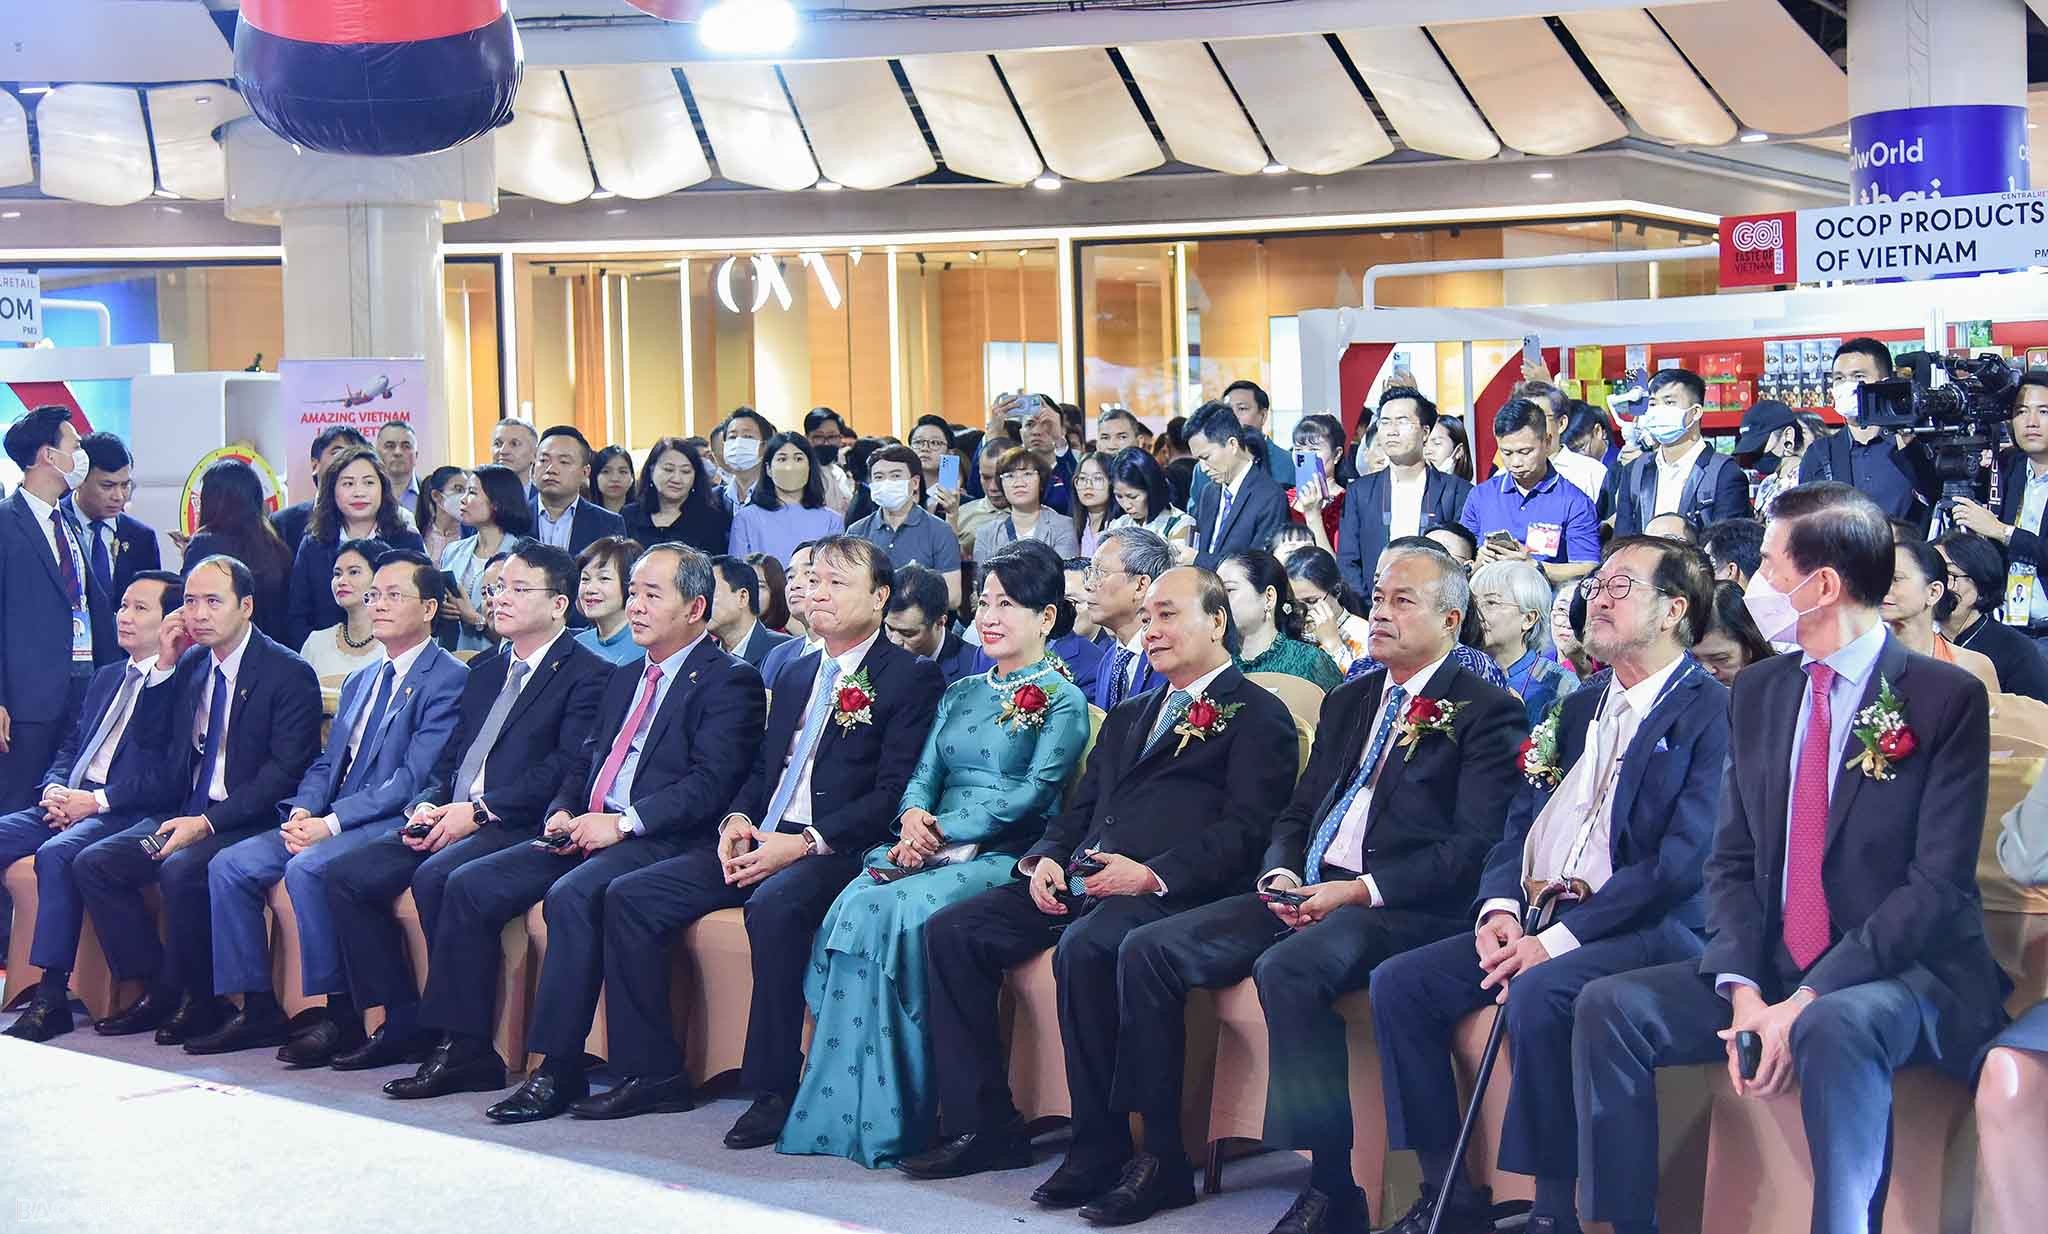 Chủ tịch nước cắt băng khởi động Tuần hàng Việt Nam tại Thái Lan